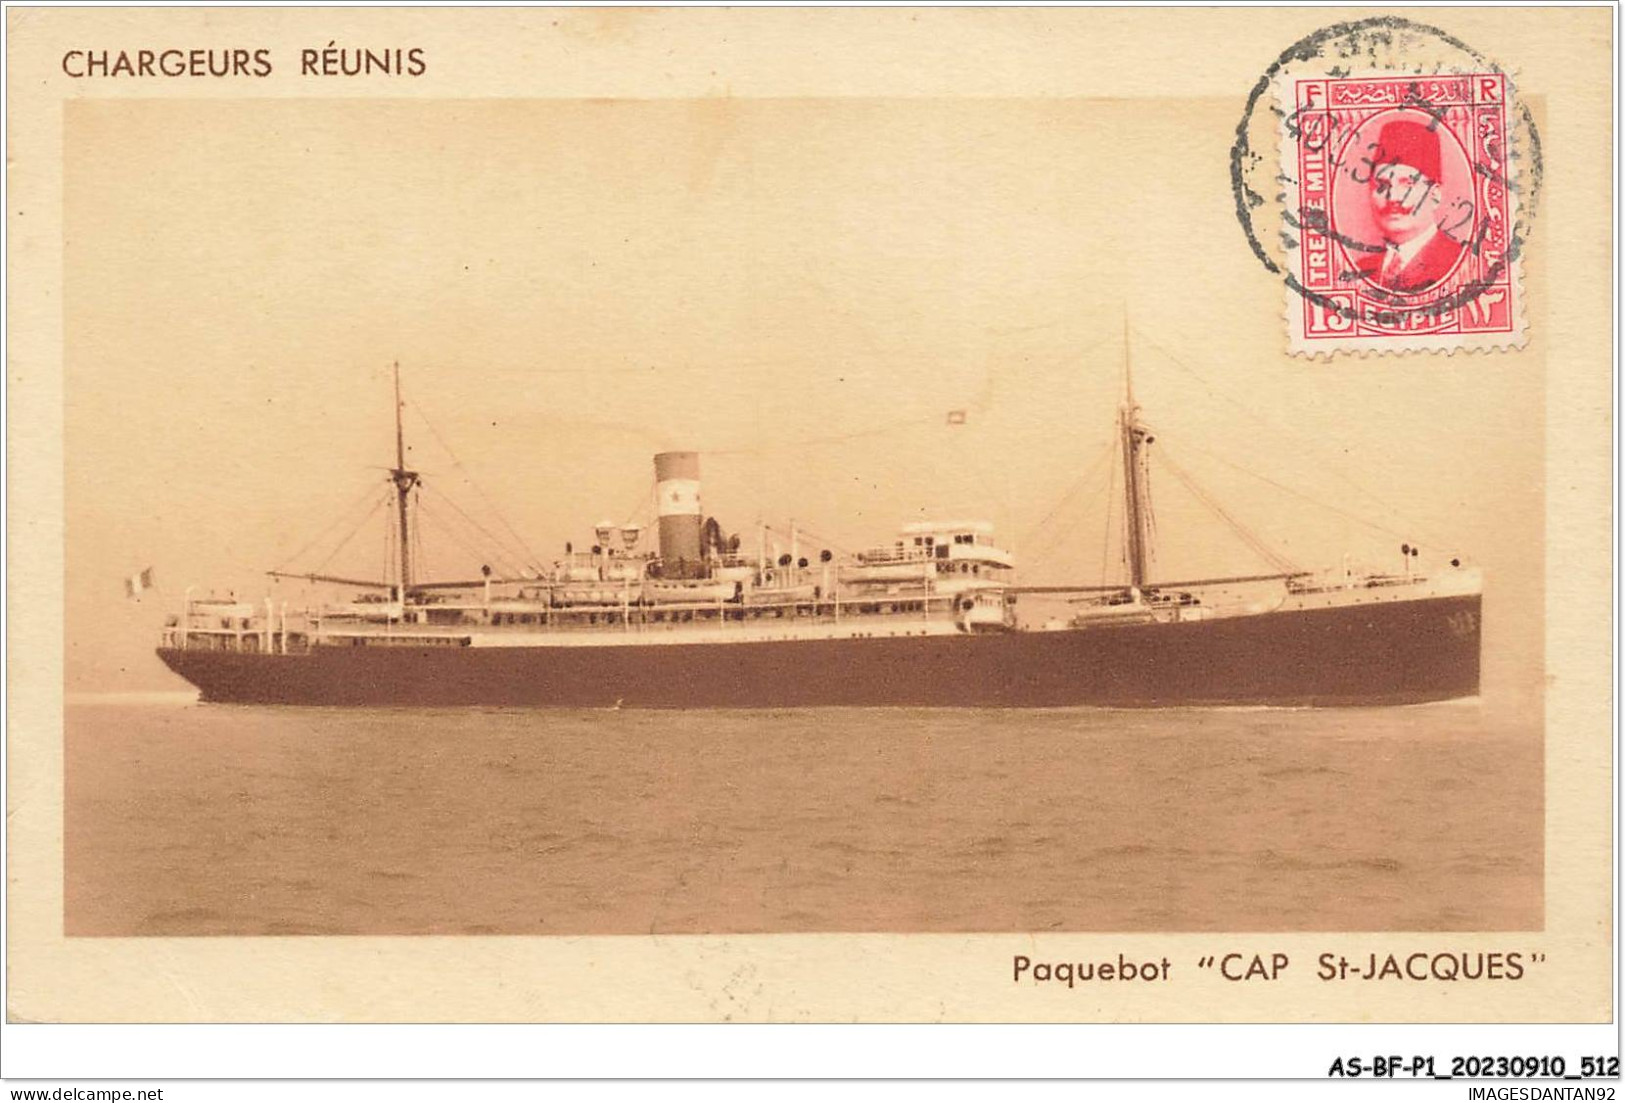 AS#BFP1-0257 - BATEAU - Paquebot Cap St-Jacques - Chargeurs Réunis - Cachet PAQ - Dampfer